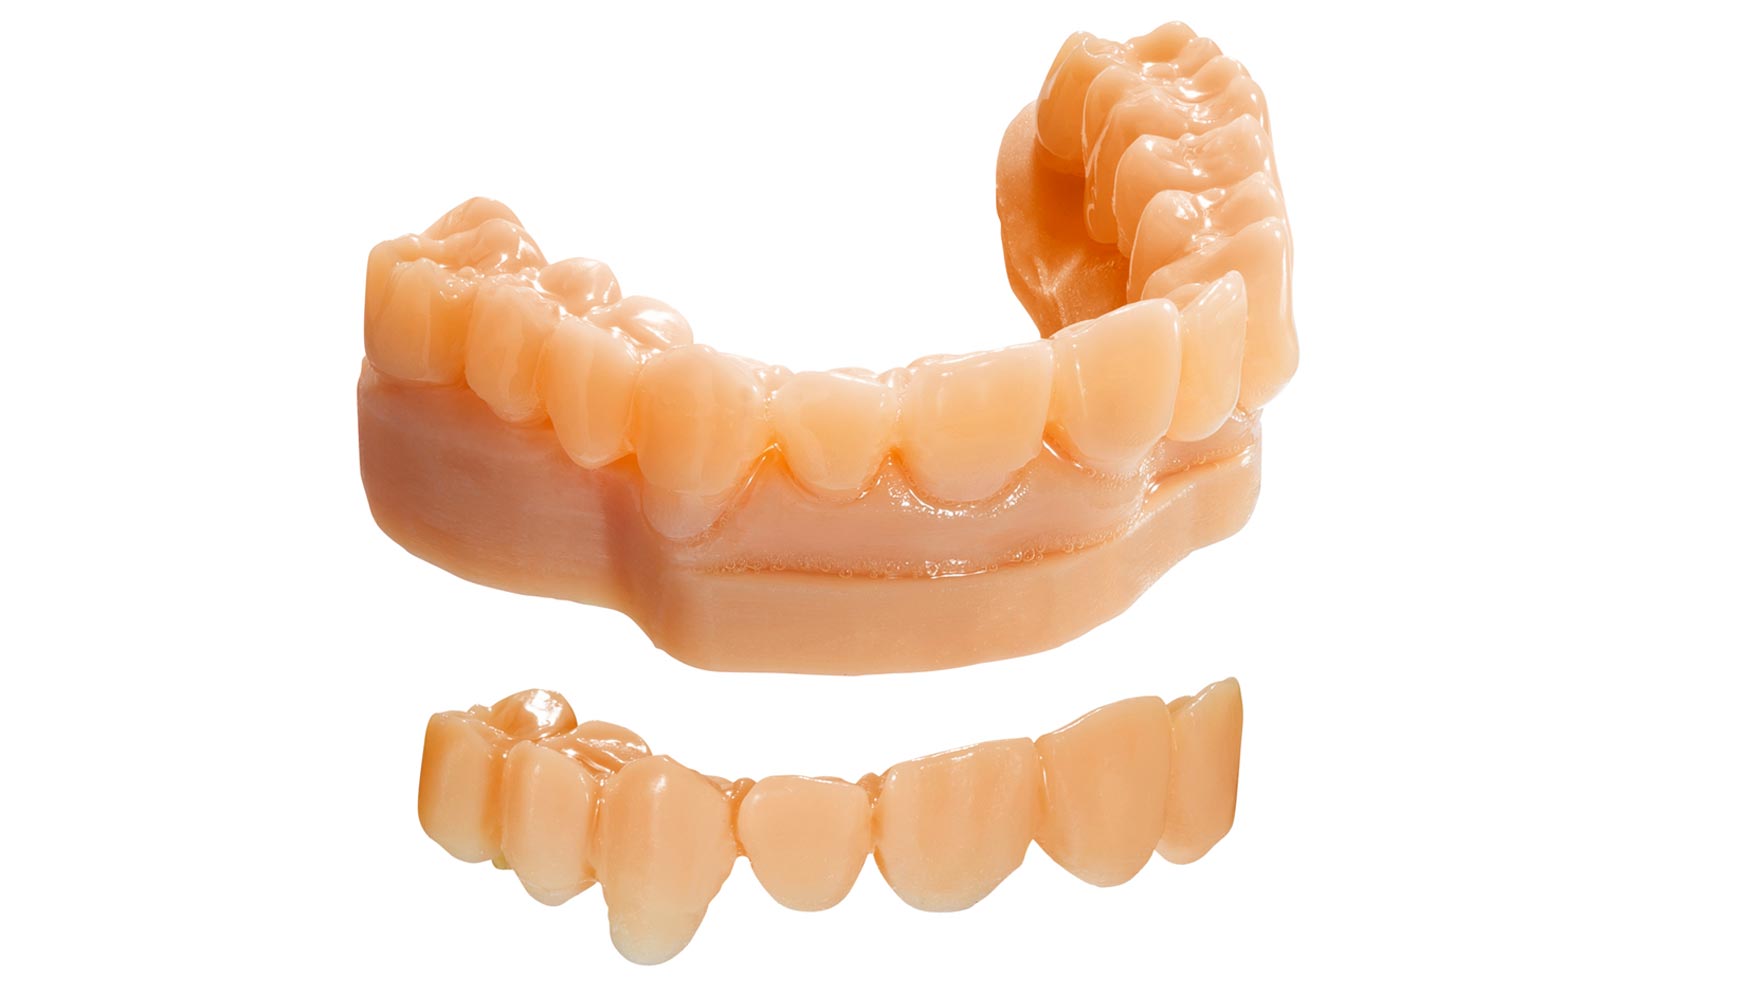 Moldes de diagnstico fabricados con el material MED620 en la impresora 3D Objet30 Dental Prime